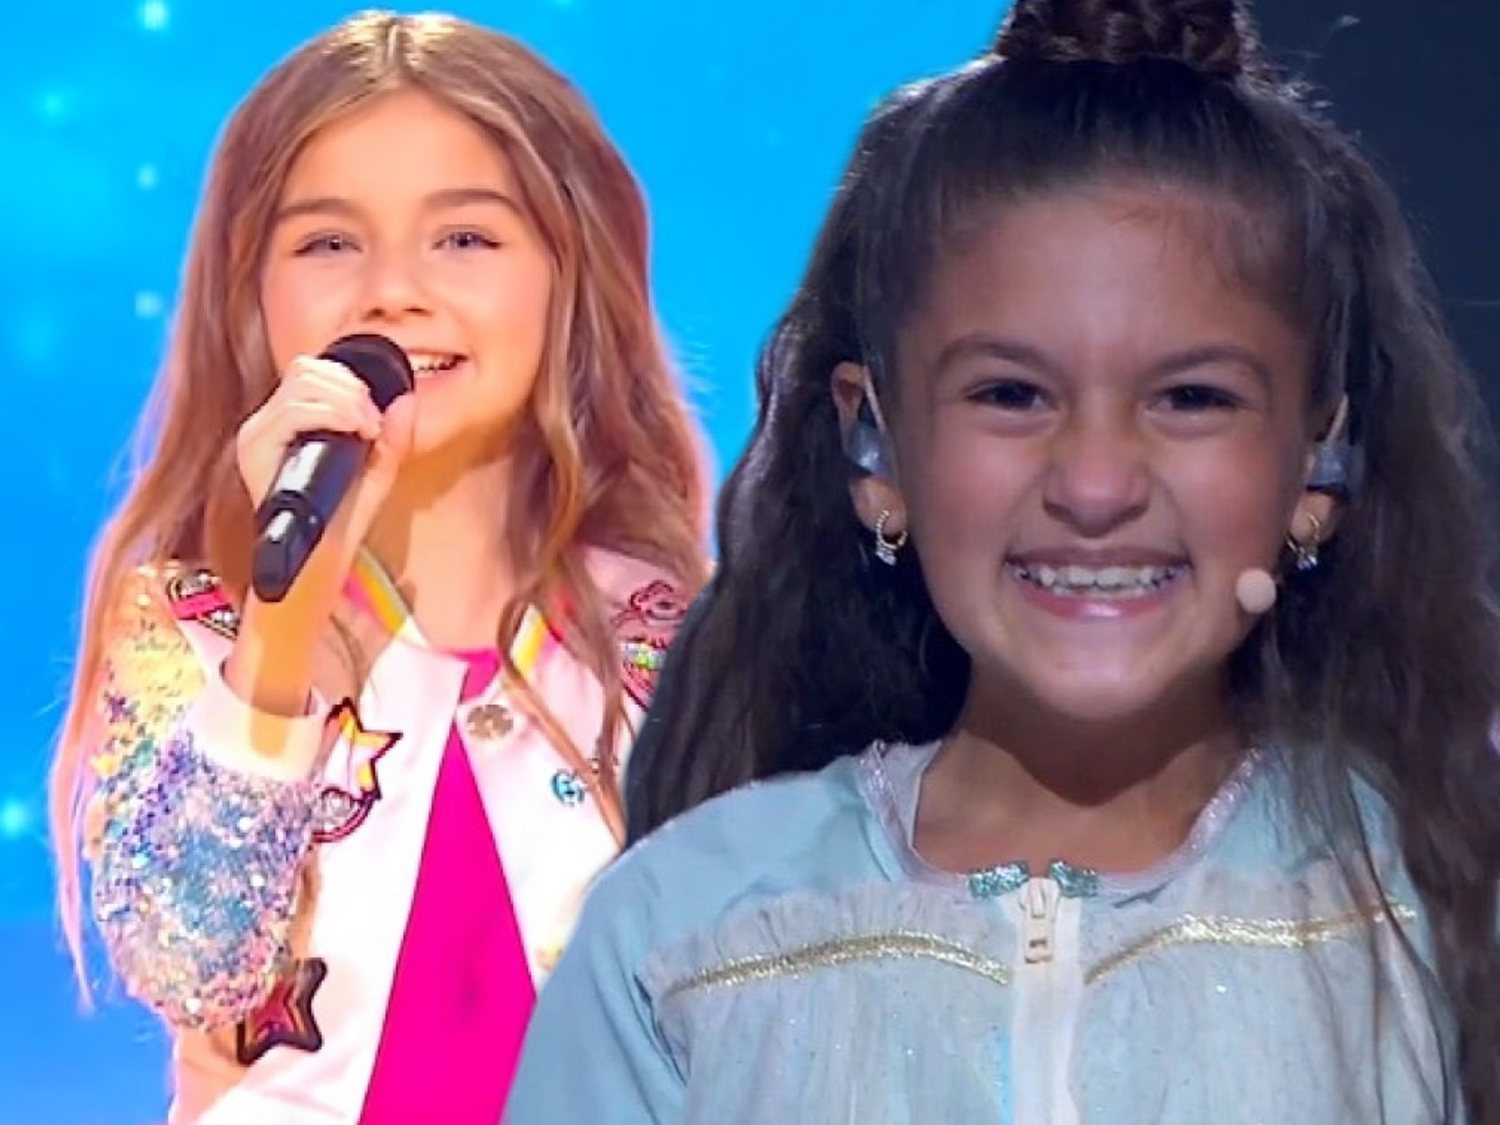 Francia gana un Eurovisión Junior 2020 ensombrecido por el playback: Soleá finaliza tercera